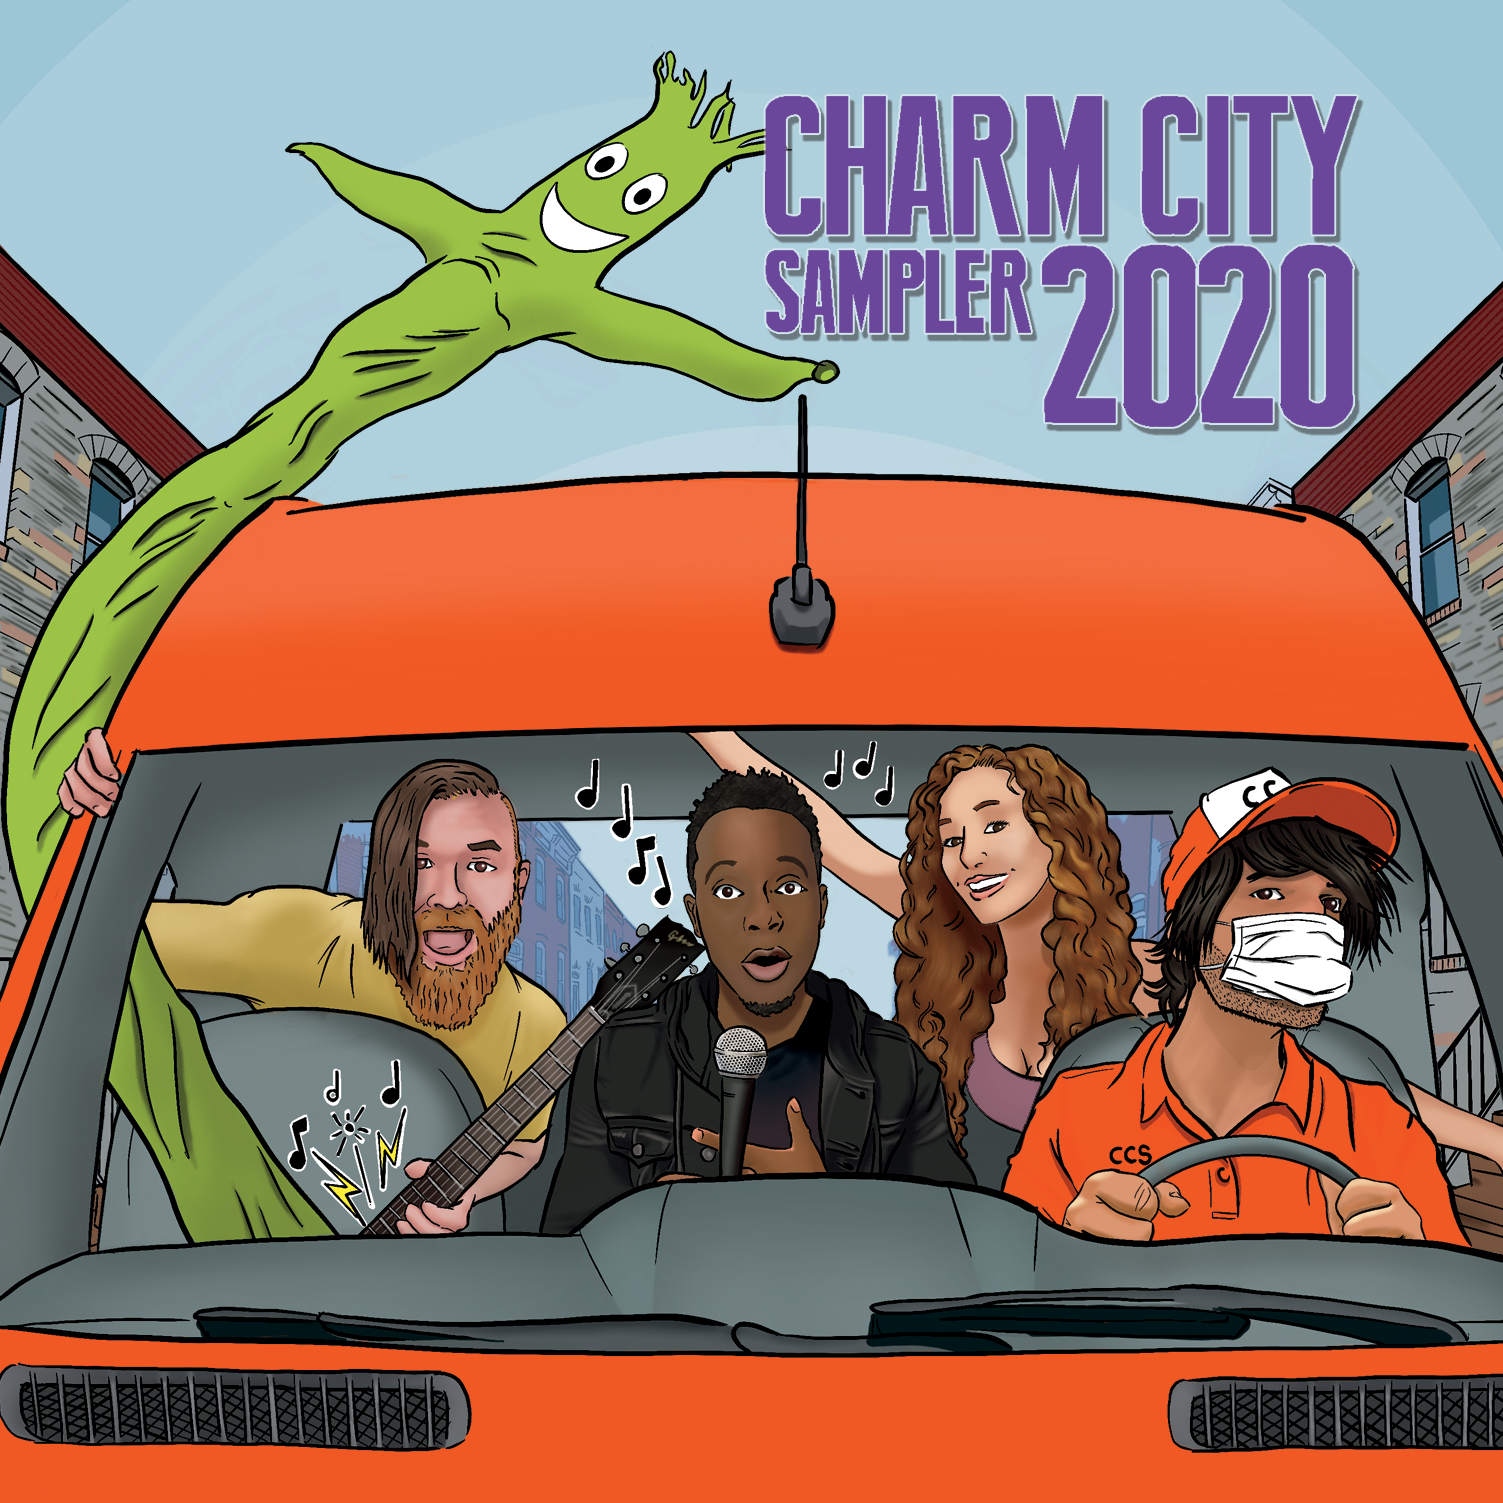 Charm City Sampler 2020